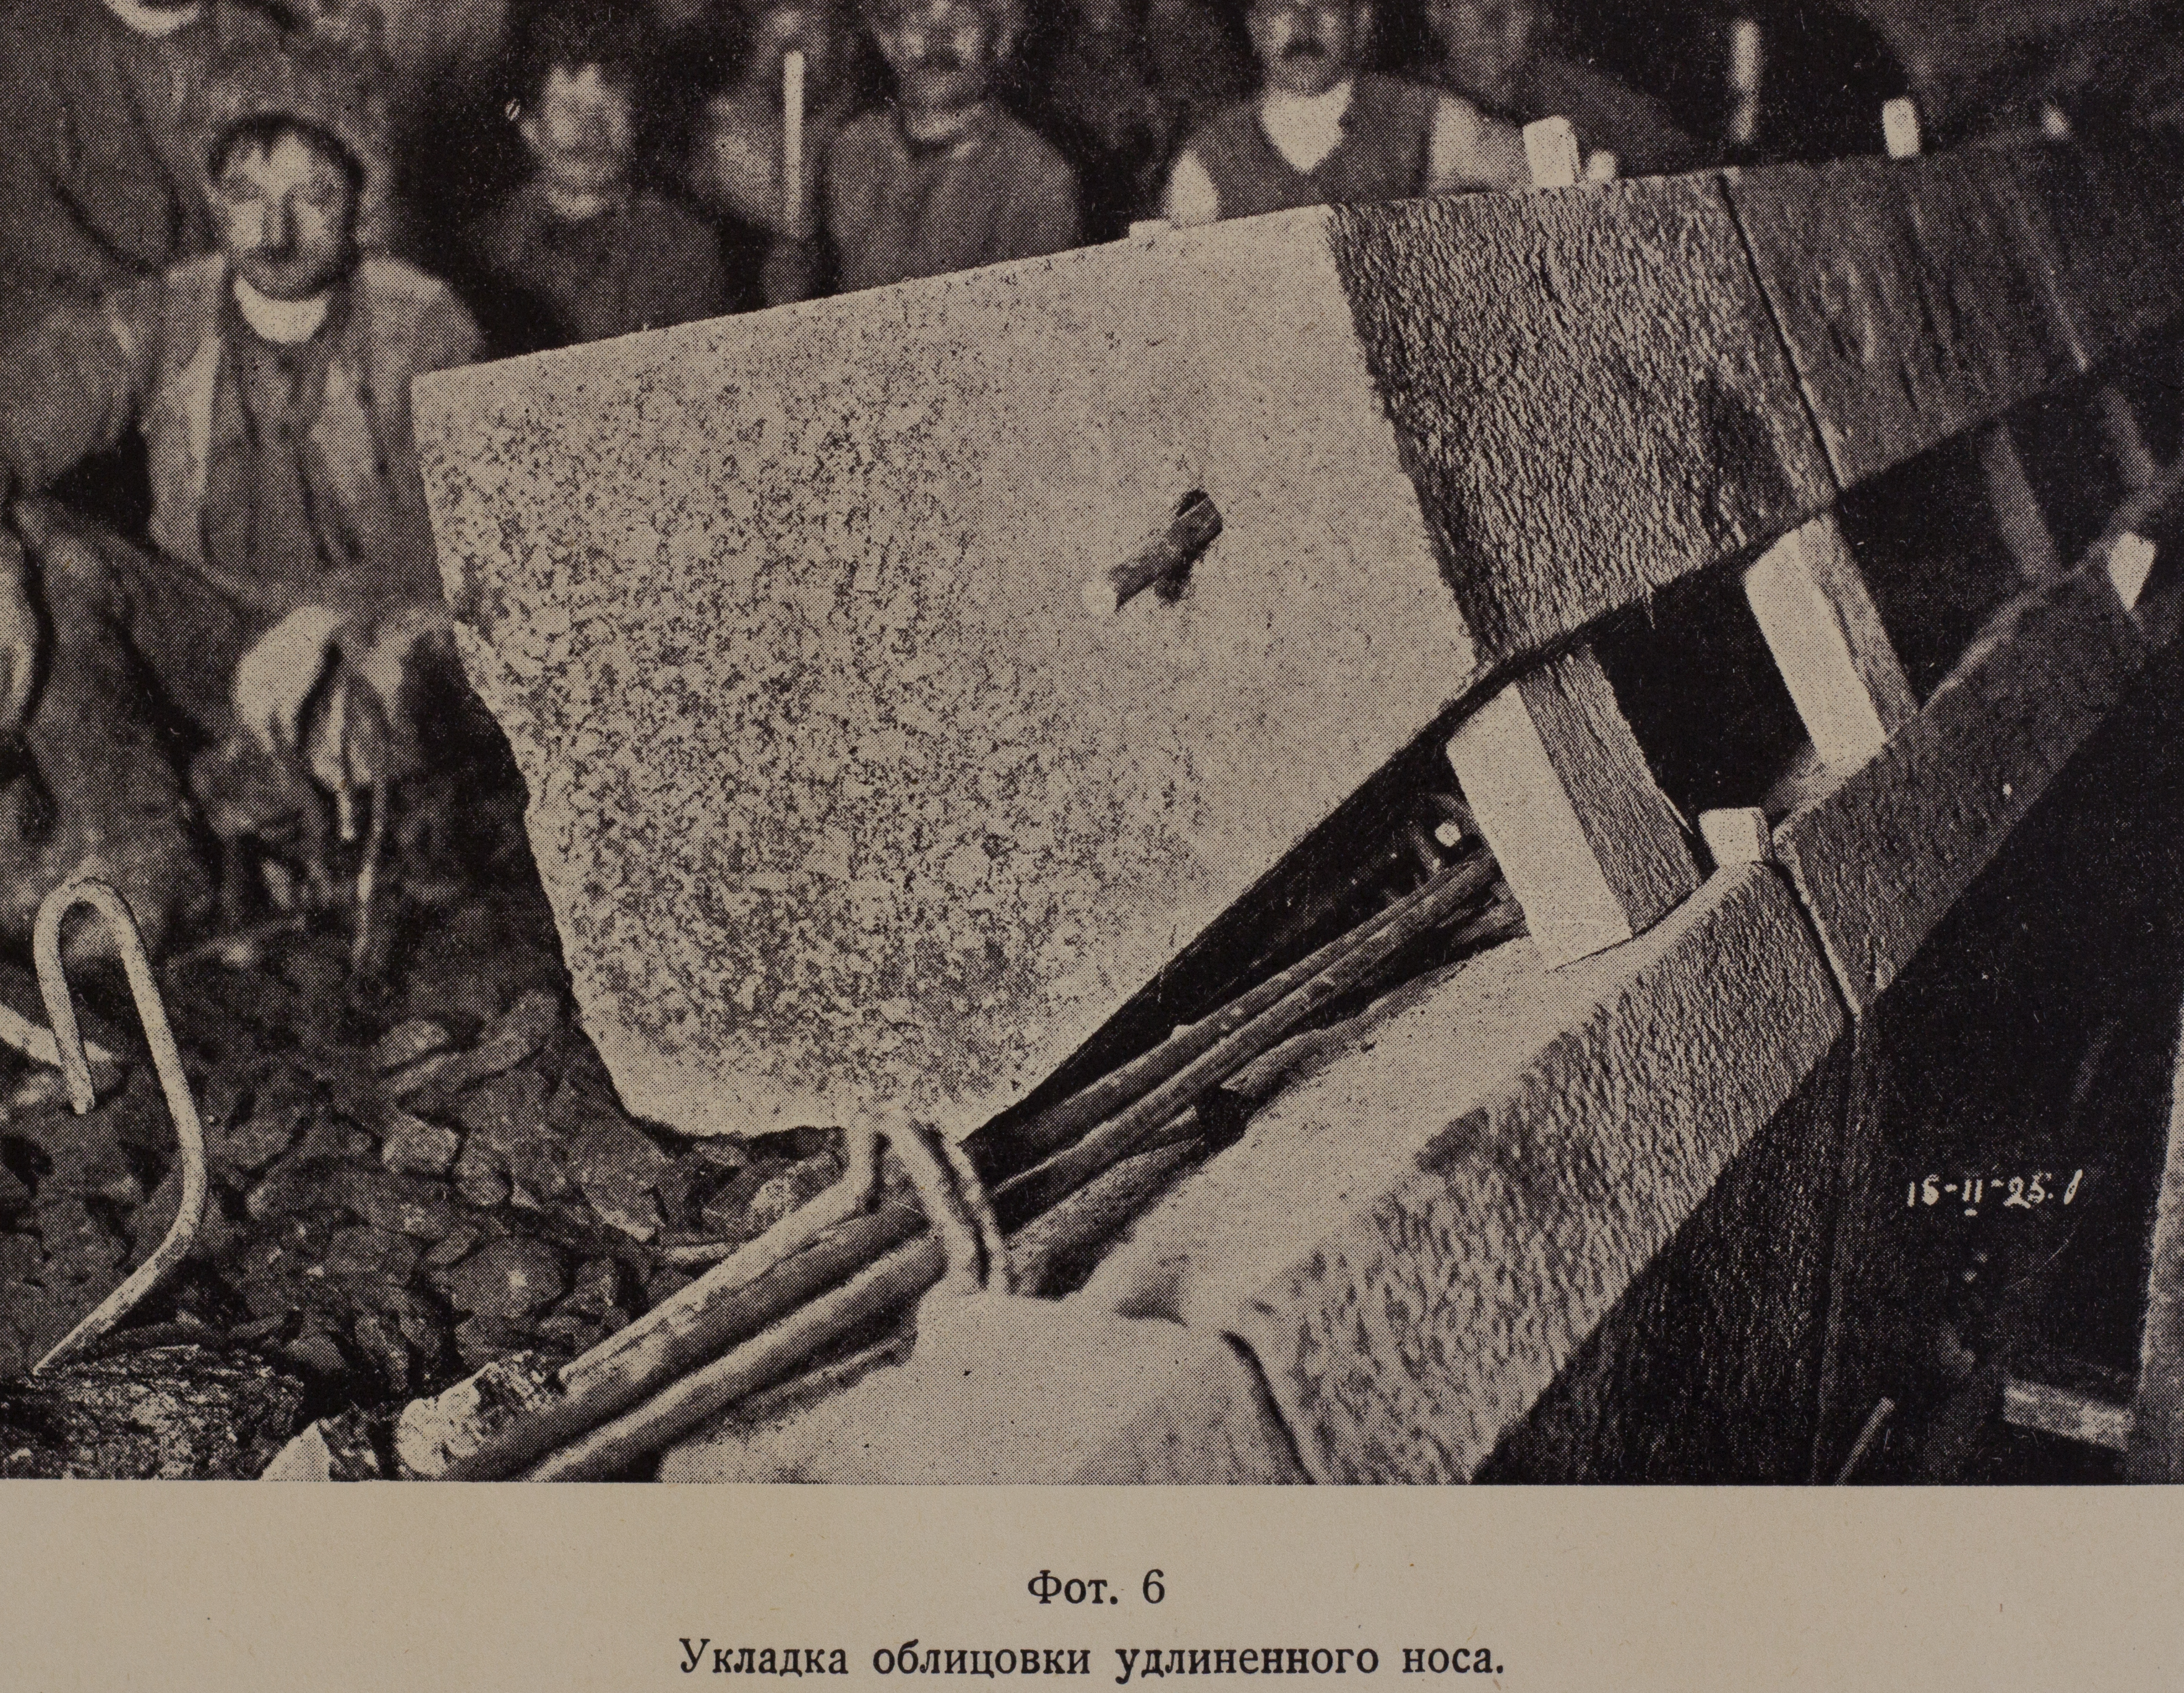 Укладка облицовки удлиненного носа (1925 г.)